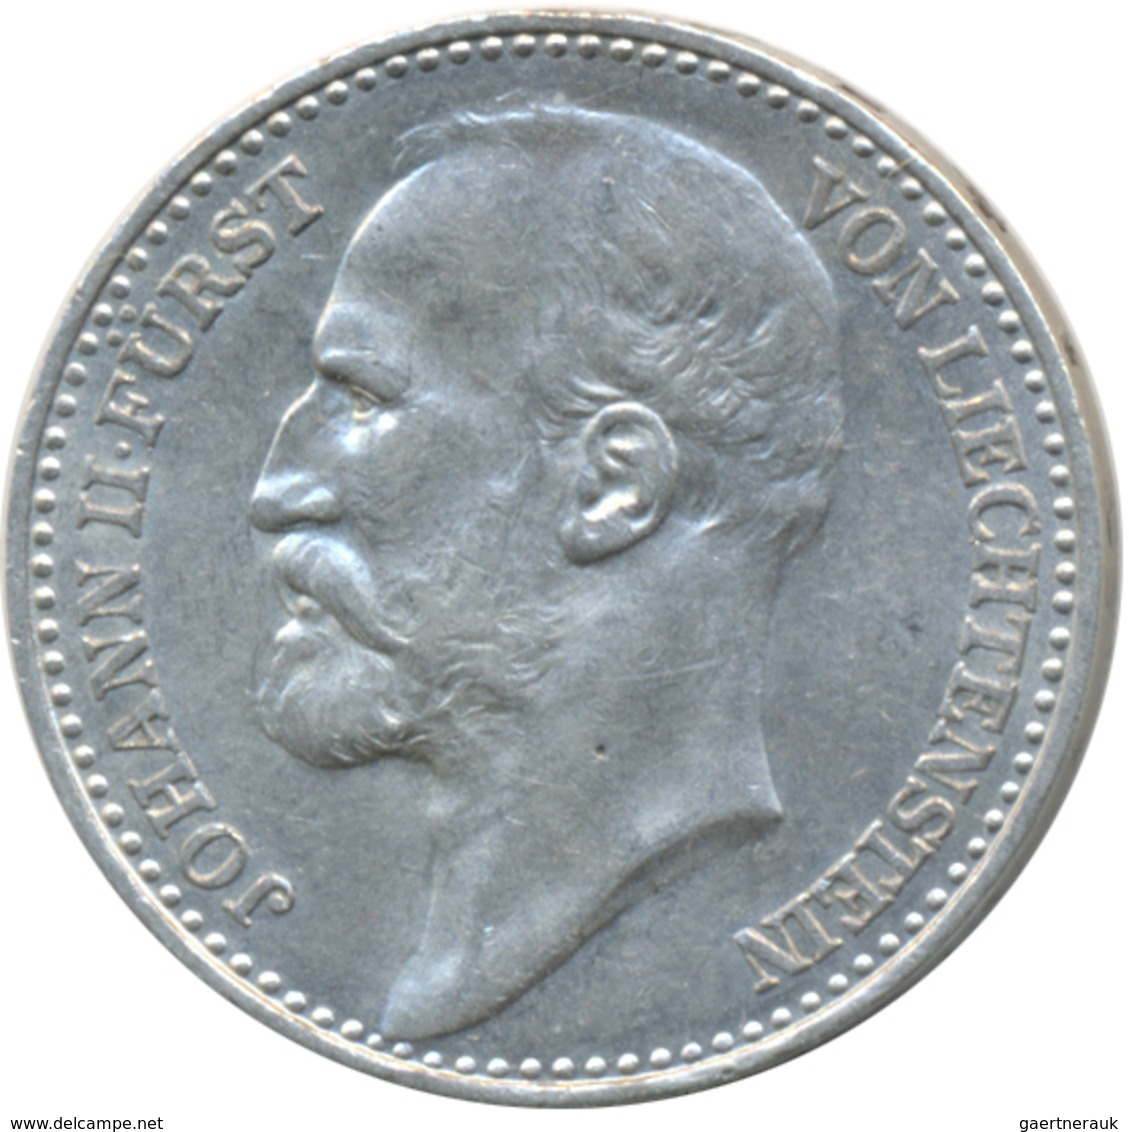 Liechtenstein: Johann II. 1858-1929: Lot 3 Stück; 2 Kronen 1915, 1 Krone 1900, 1915, Fast Vorzüglich - Liechtenstein